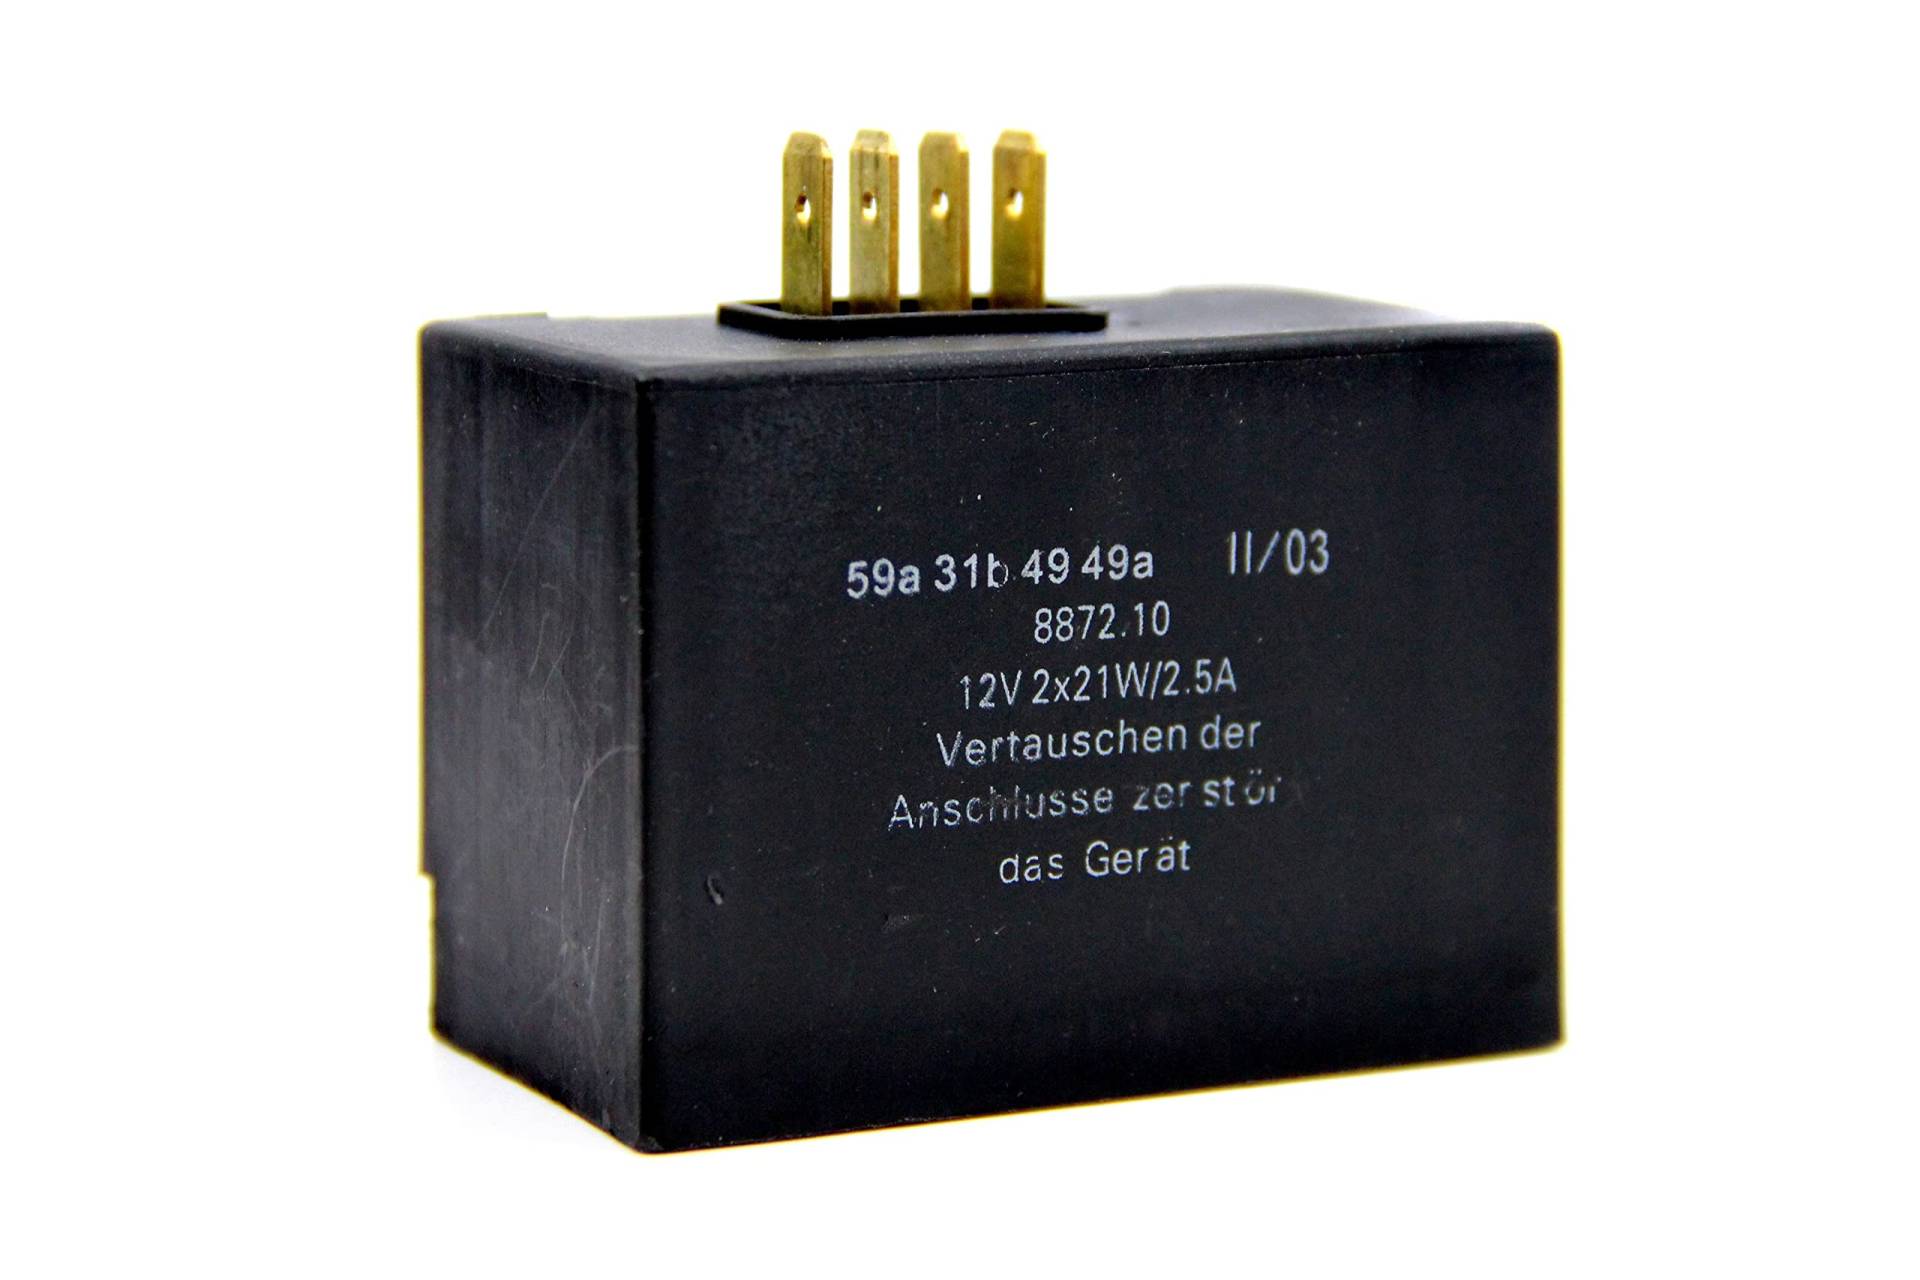 12V Laderegler Blinkgeber 2x21W - 2,5A - Elektronisch 4-polig für Simson S50, S51, S70, S83, SR50, SR80 von BISOMO